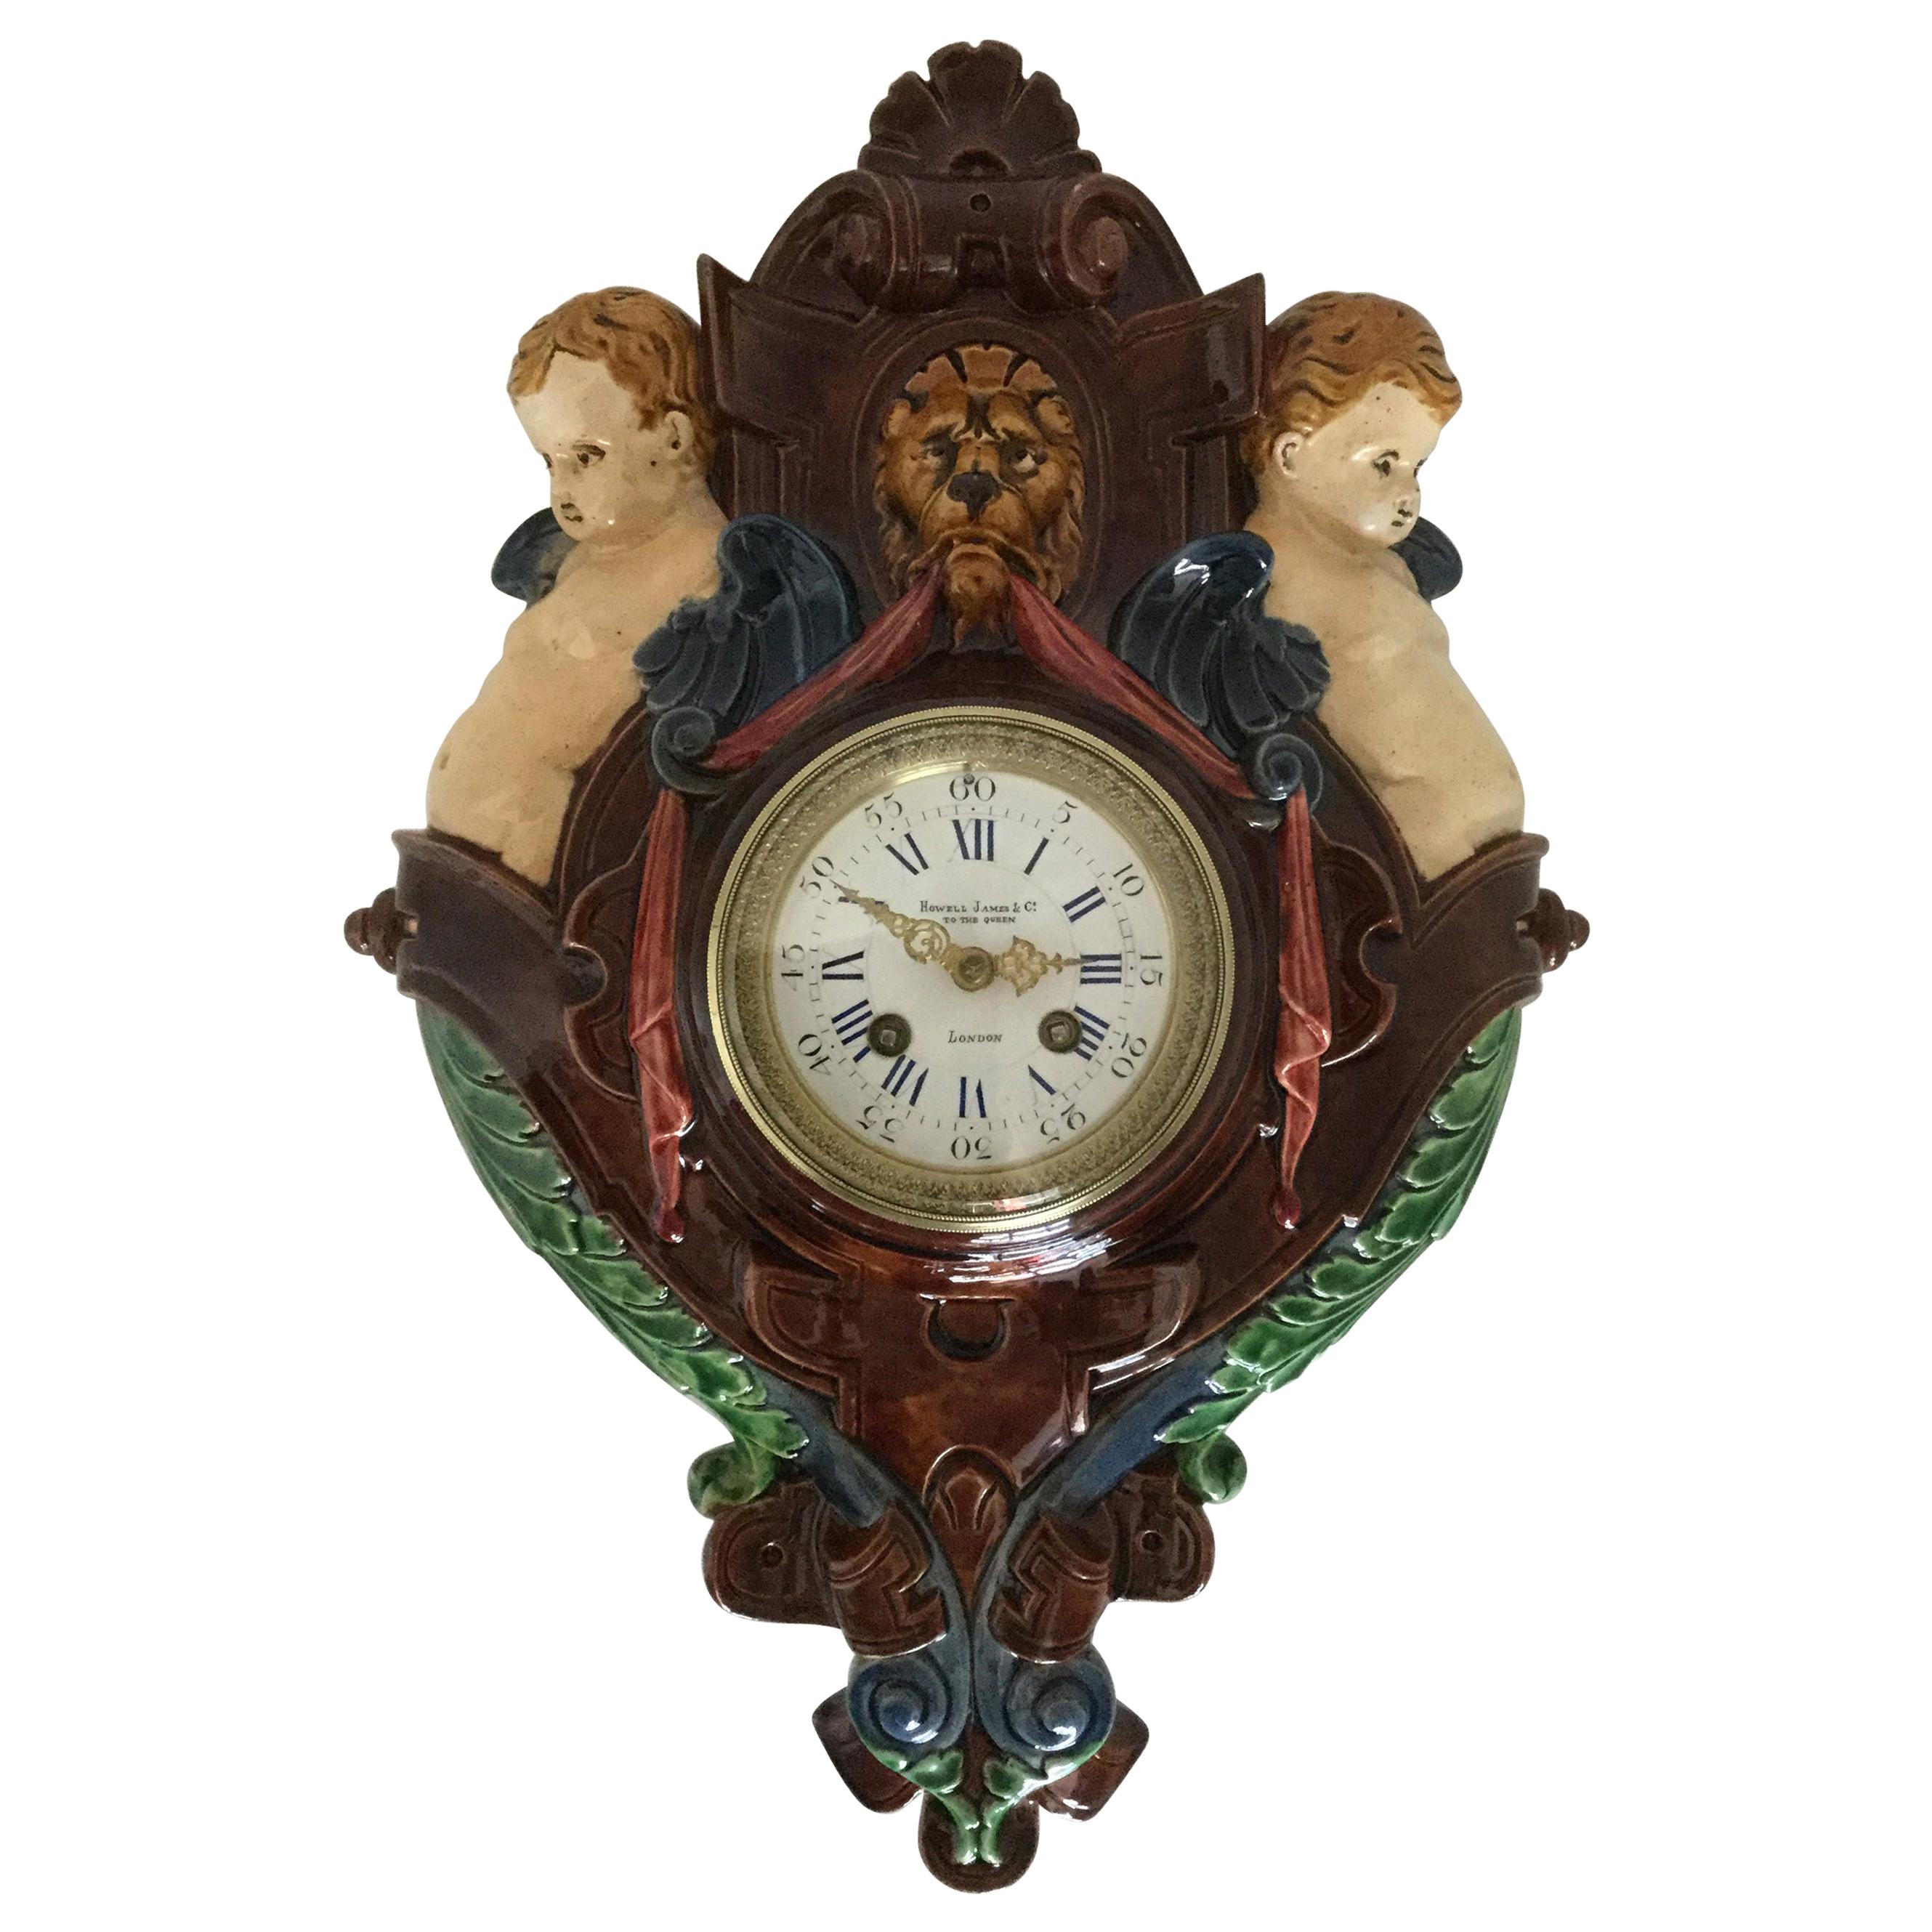 Thomas Sargent Palissy Ware Majolica Wall Clock circa 1870 Japy Freres Movement